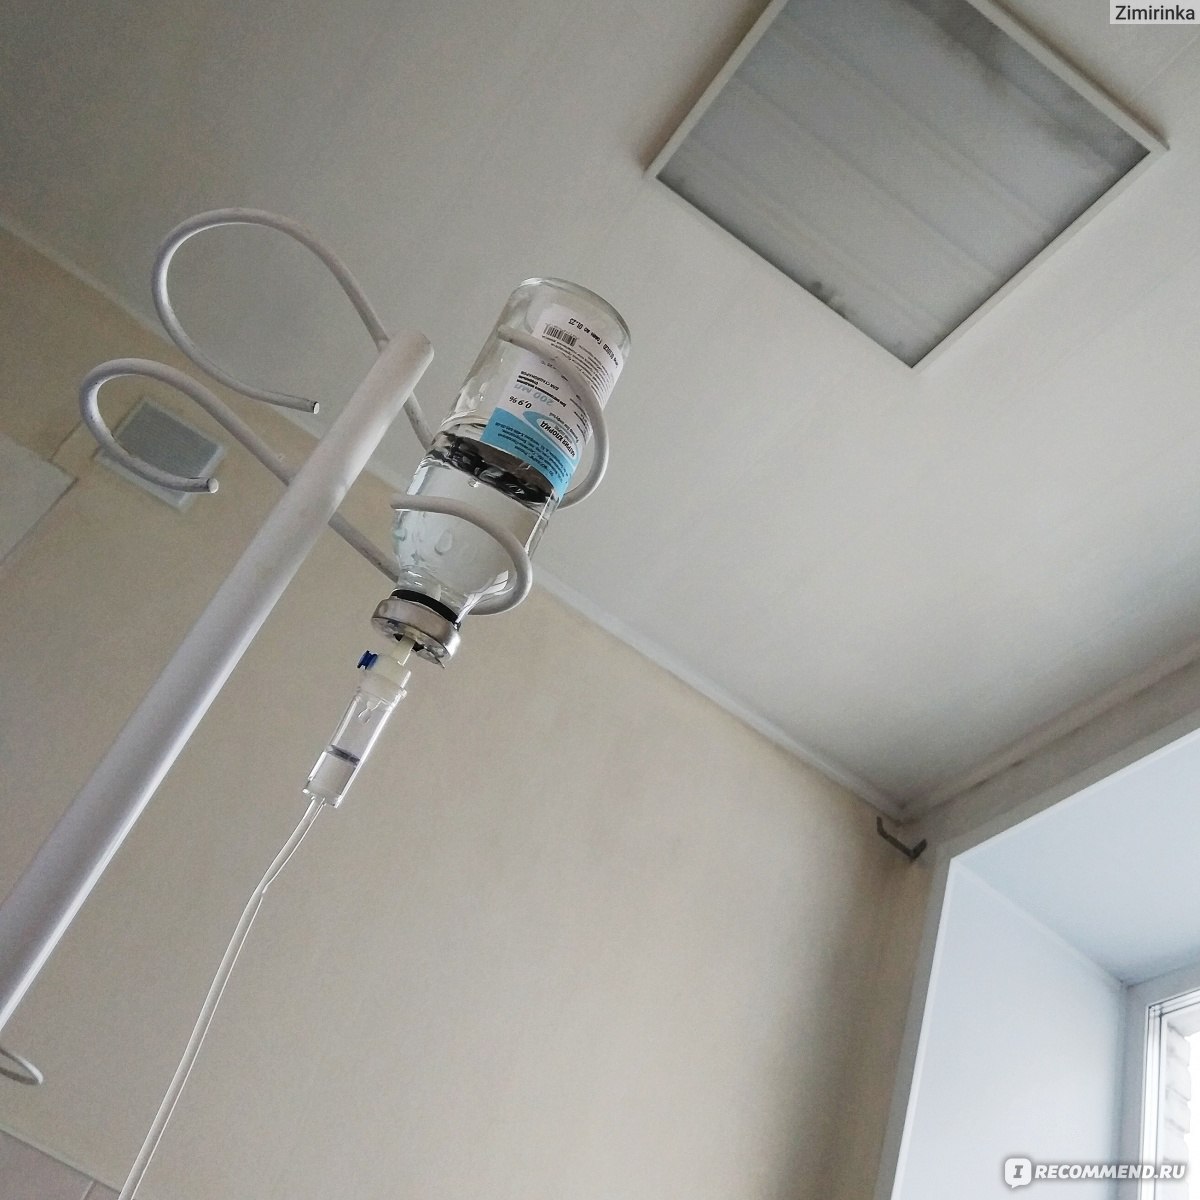 Капельница фото в больнице с потолком